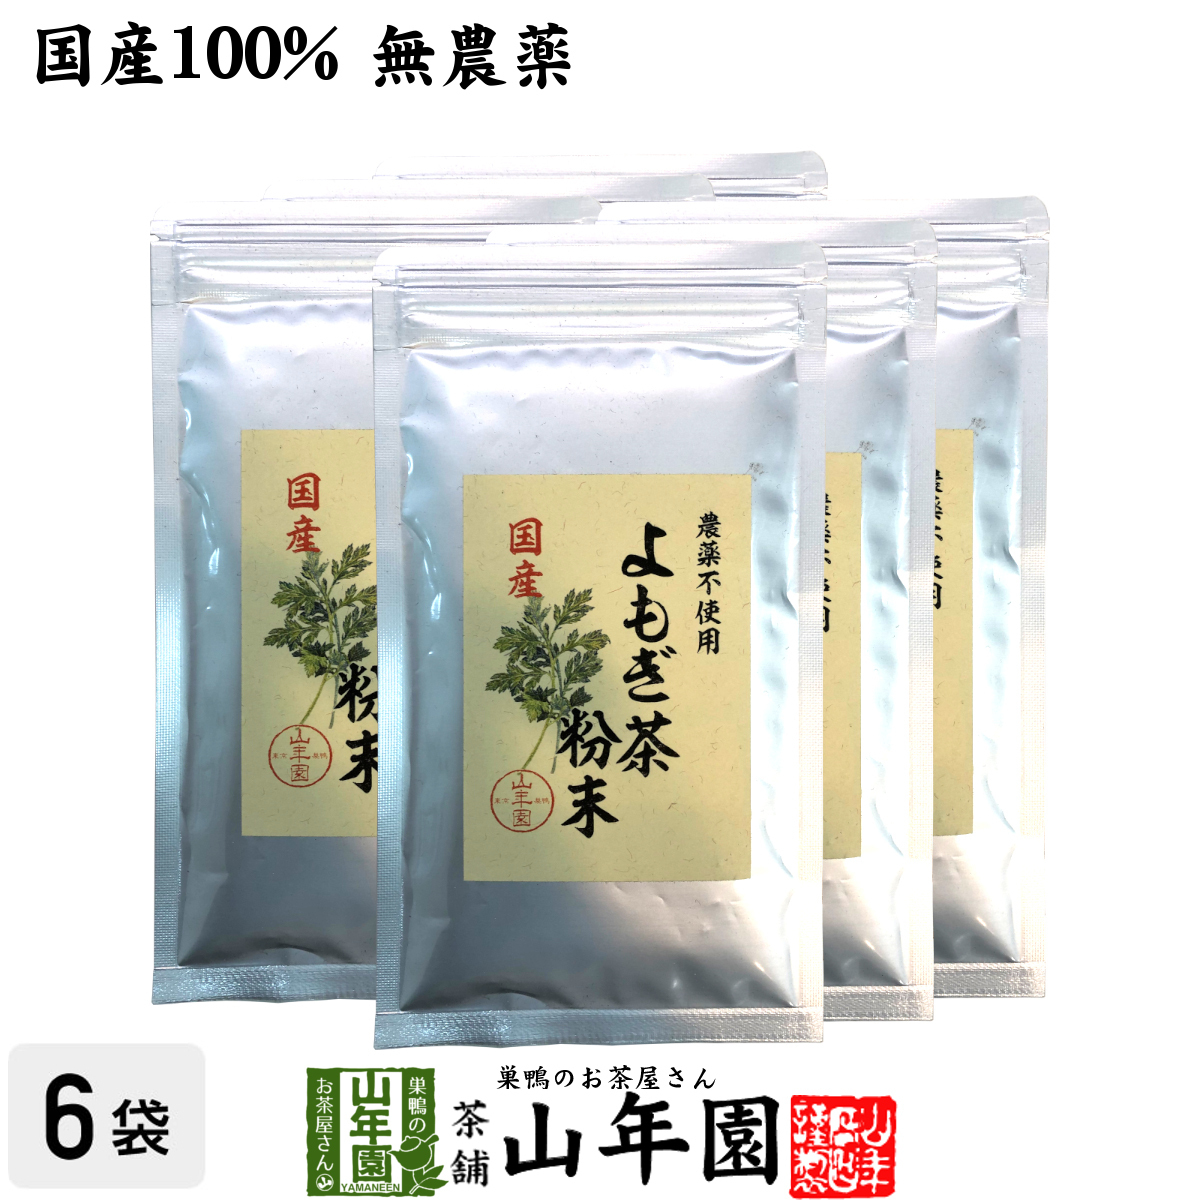 健康茶 国産100% よもぎ茶 粉末 青森県産 無農薬 ノンカフェイン 60g×6袋セット